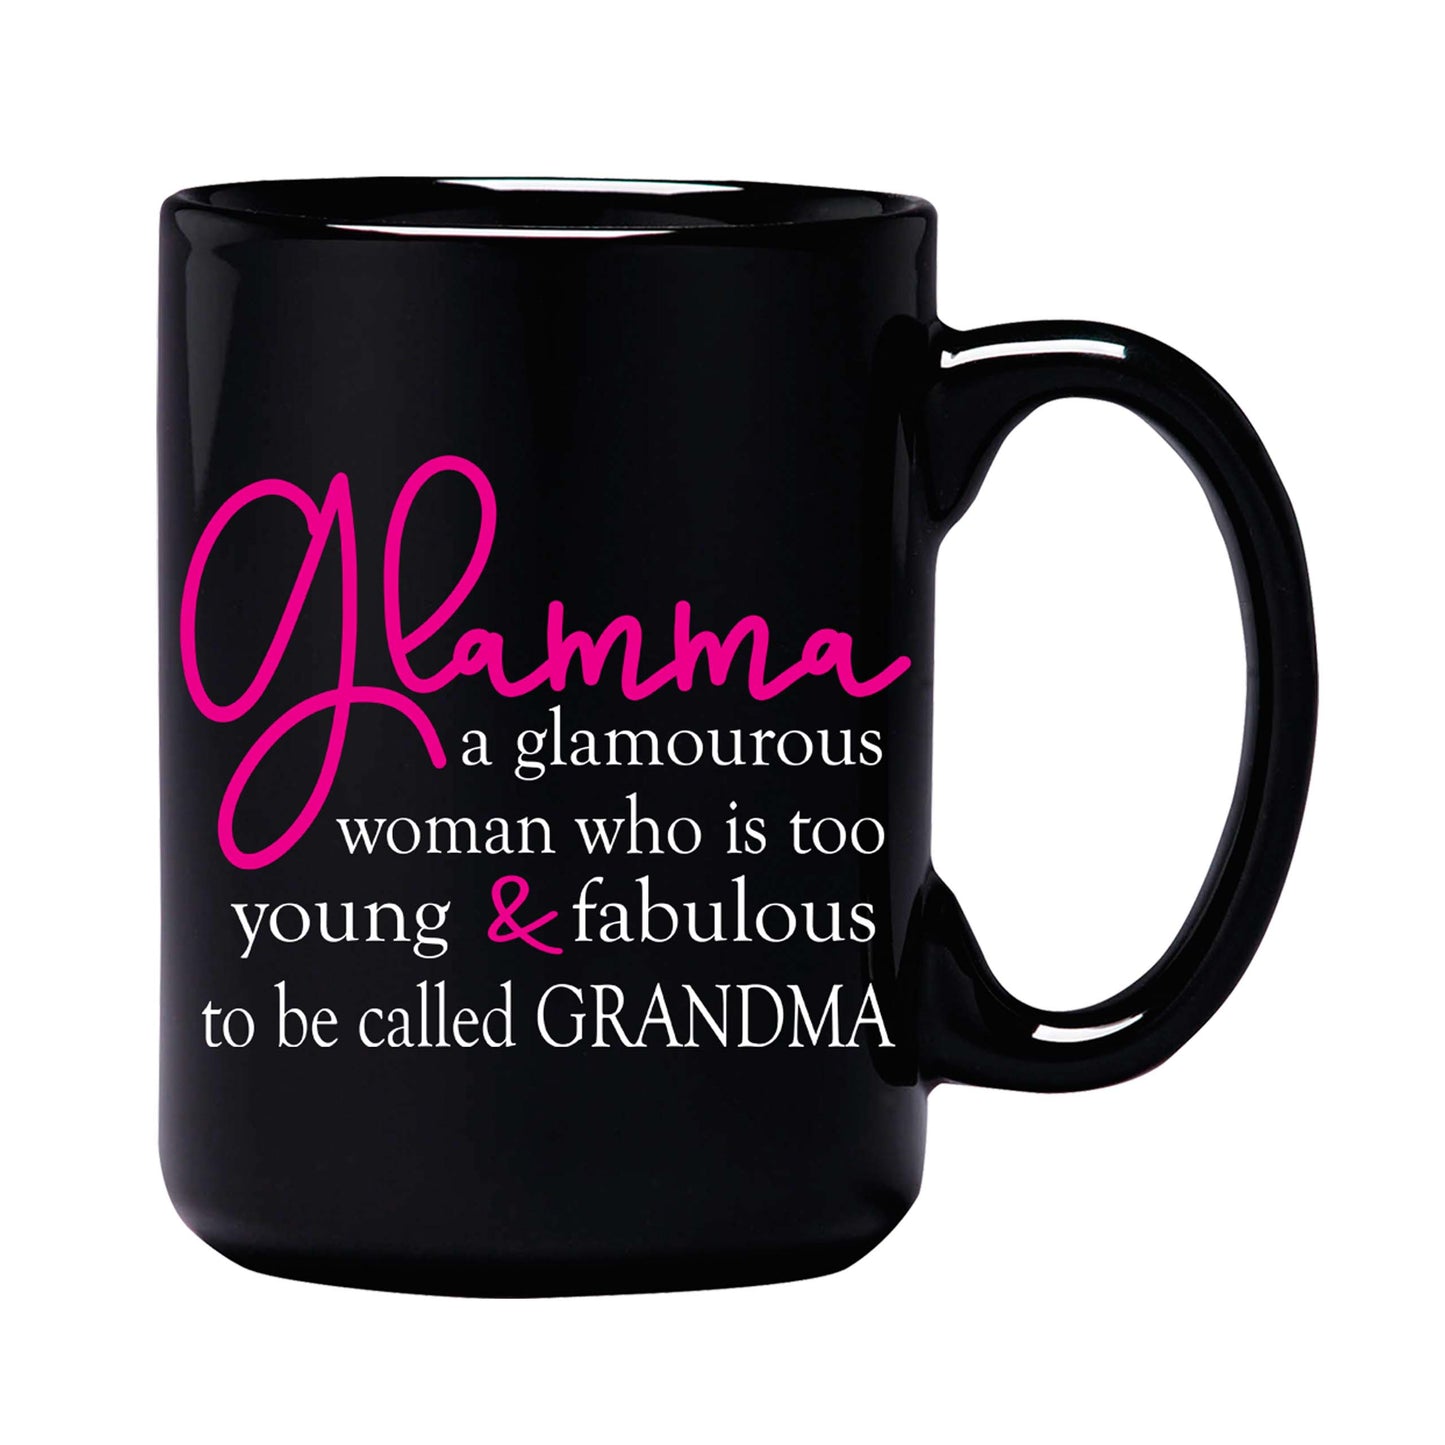 Glamma 15oz Black Ceramic Mug Utah Outlet Deal